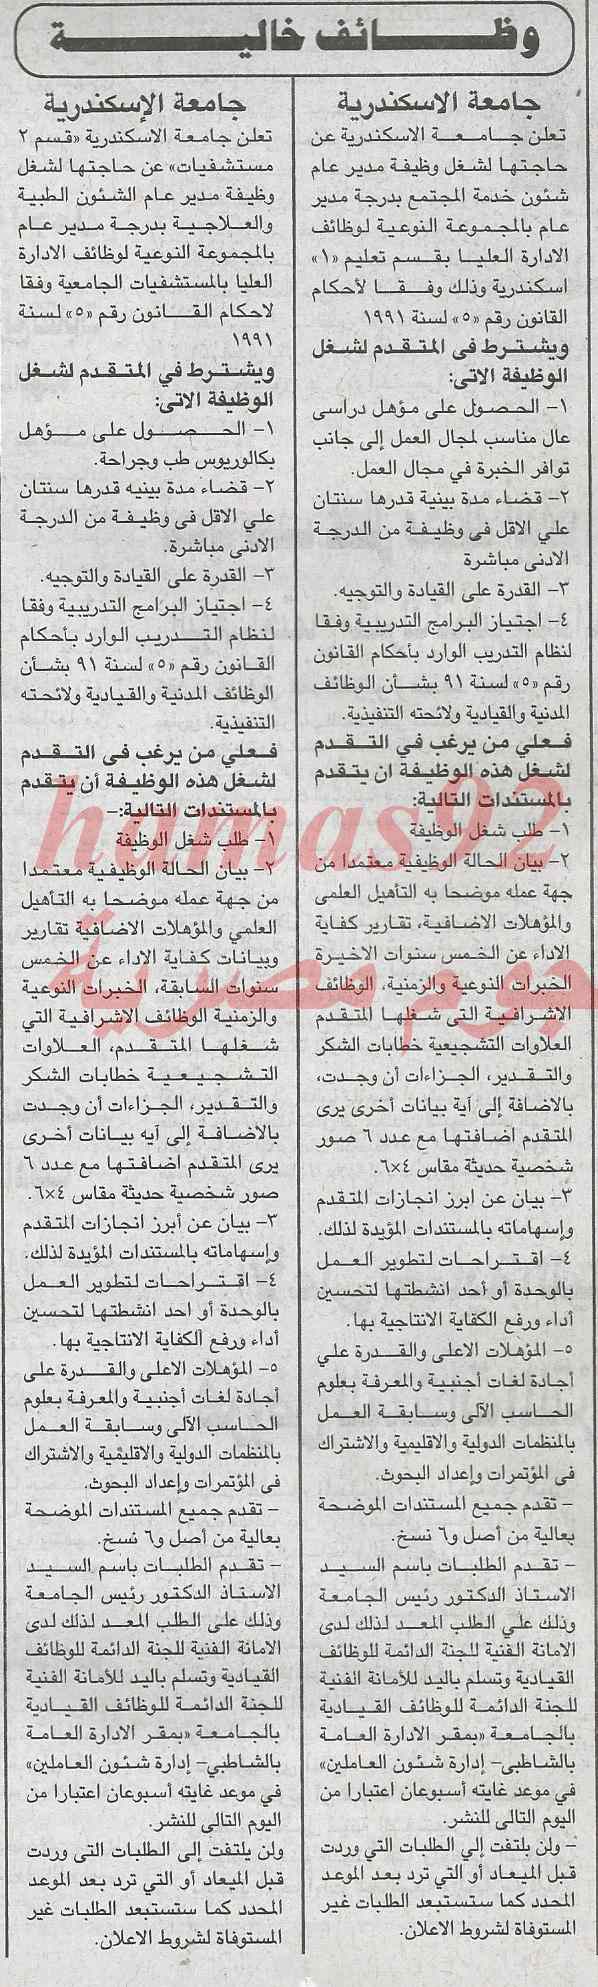 وظائف خالية في جريدة الجمهورية في مصر اليوم الاربعاء 26-2-2014